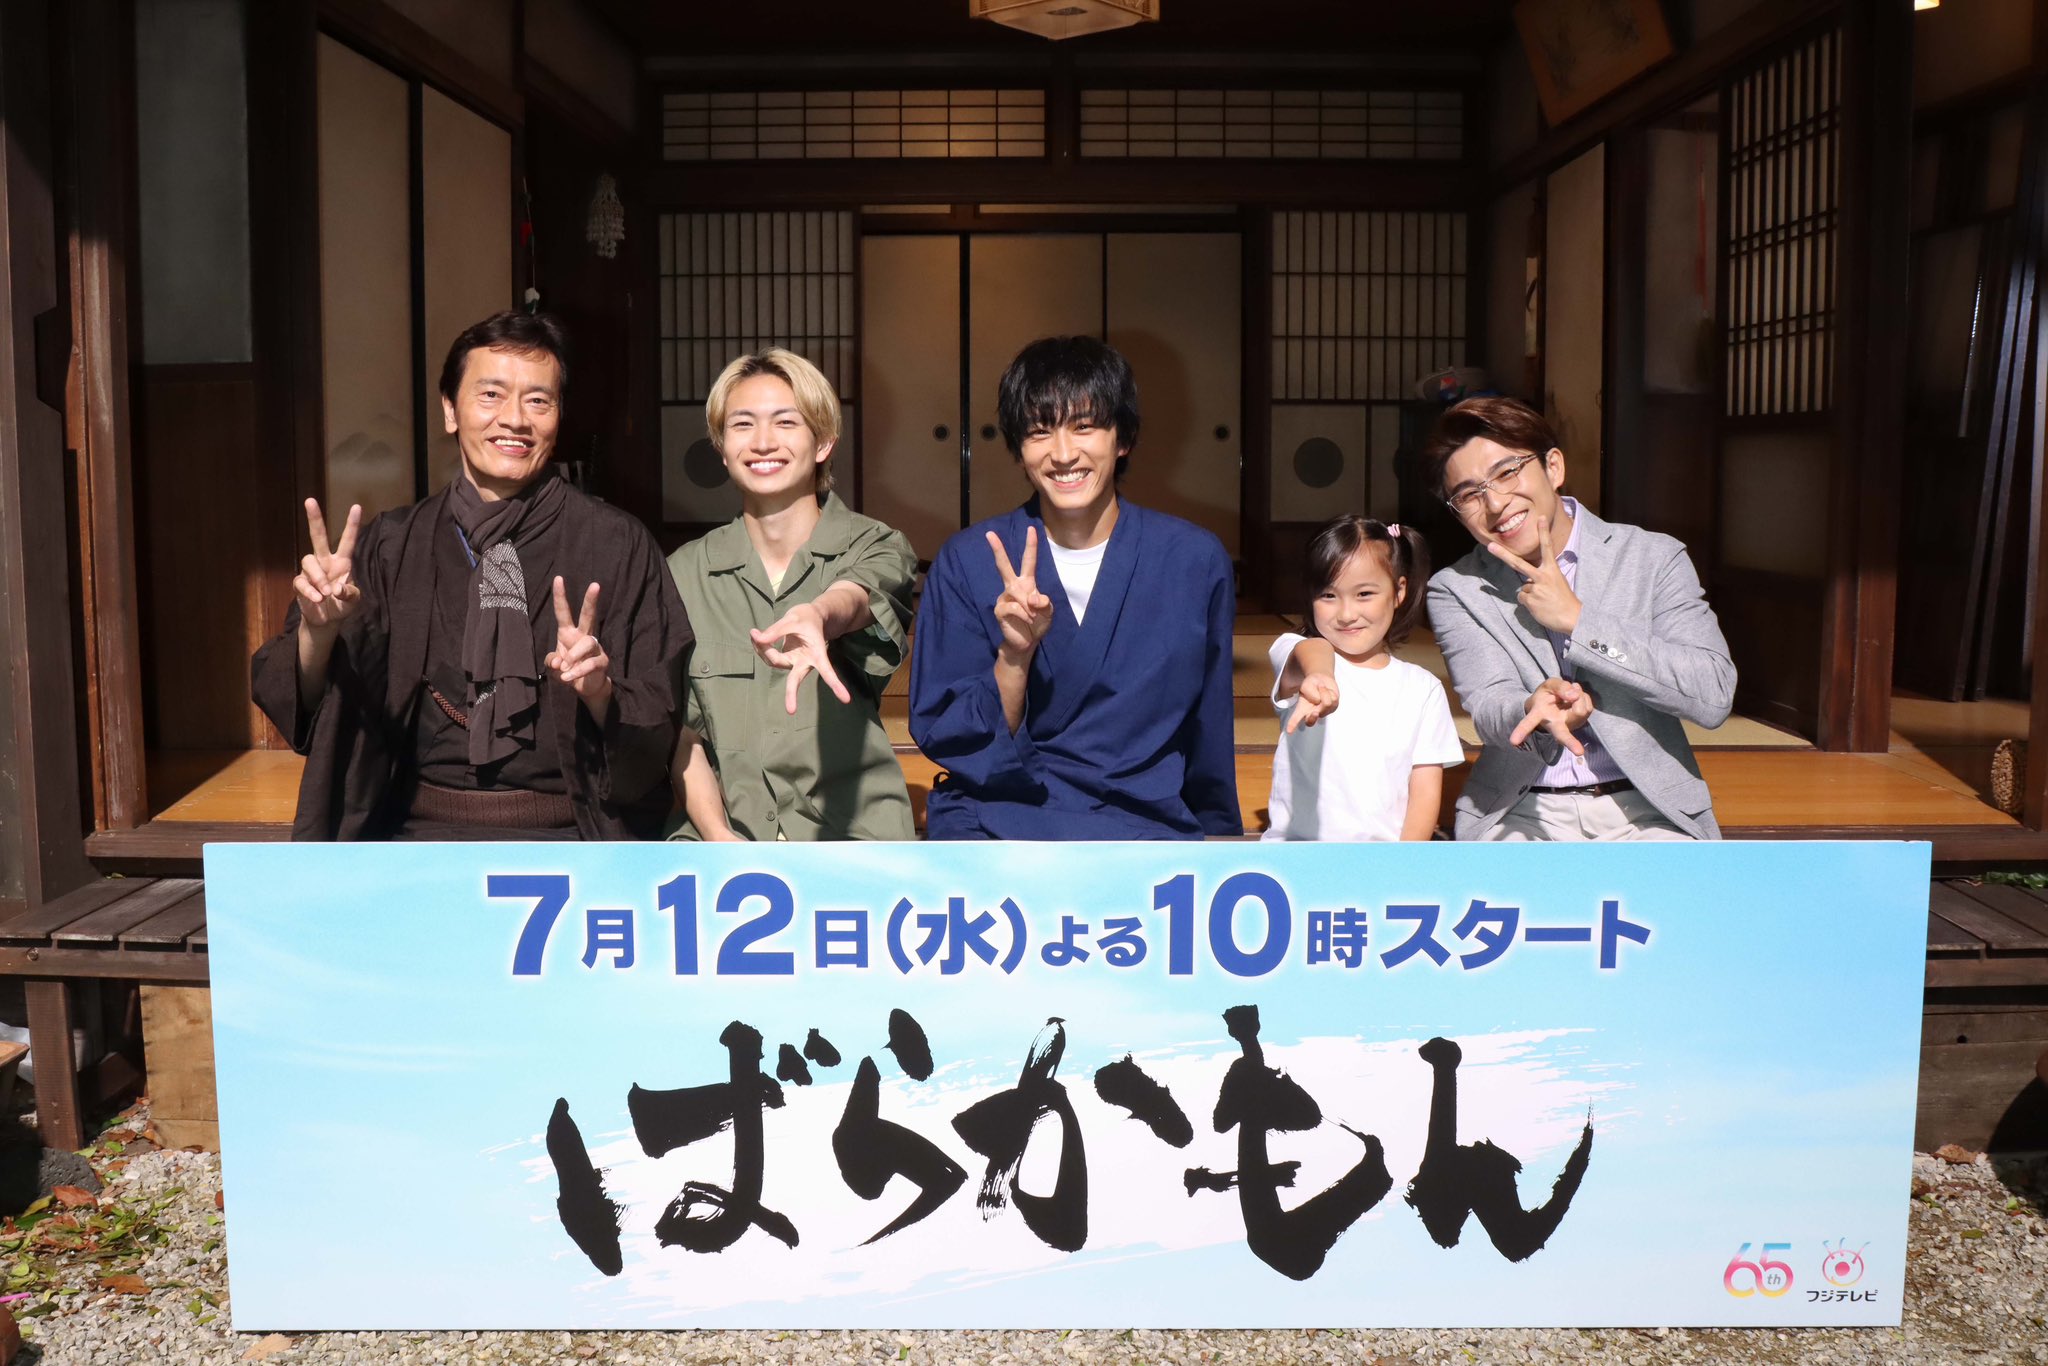 ハズキ 🍀 on X: Fuji TV summer drama Barakamon starring #SuginoYosuke first  episode rating was 5.9% #ばらかもん #杉野遥亮  / X